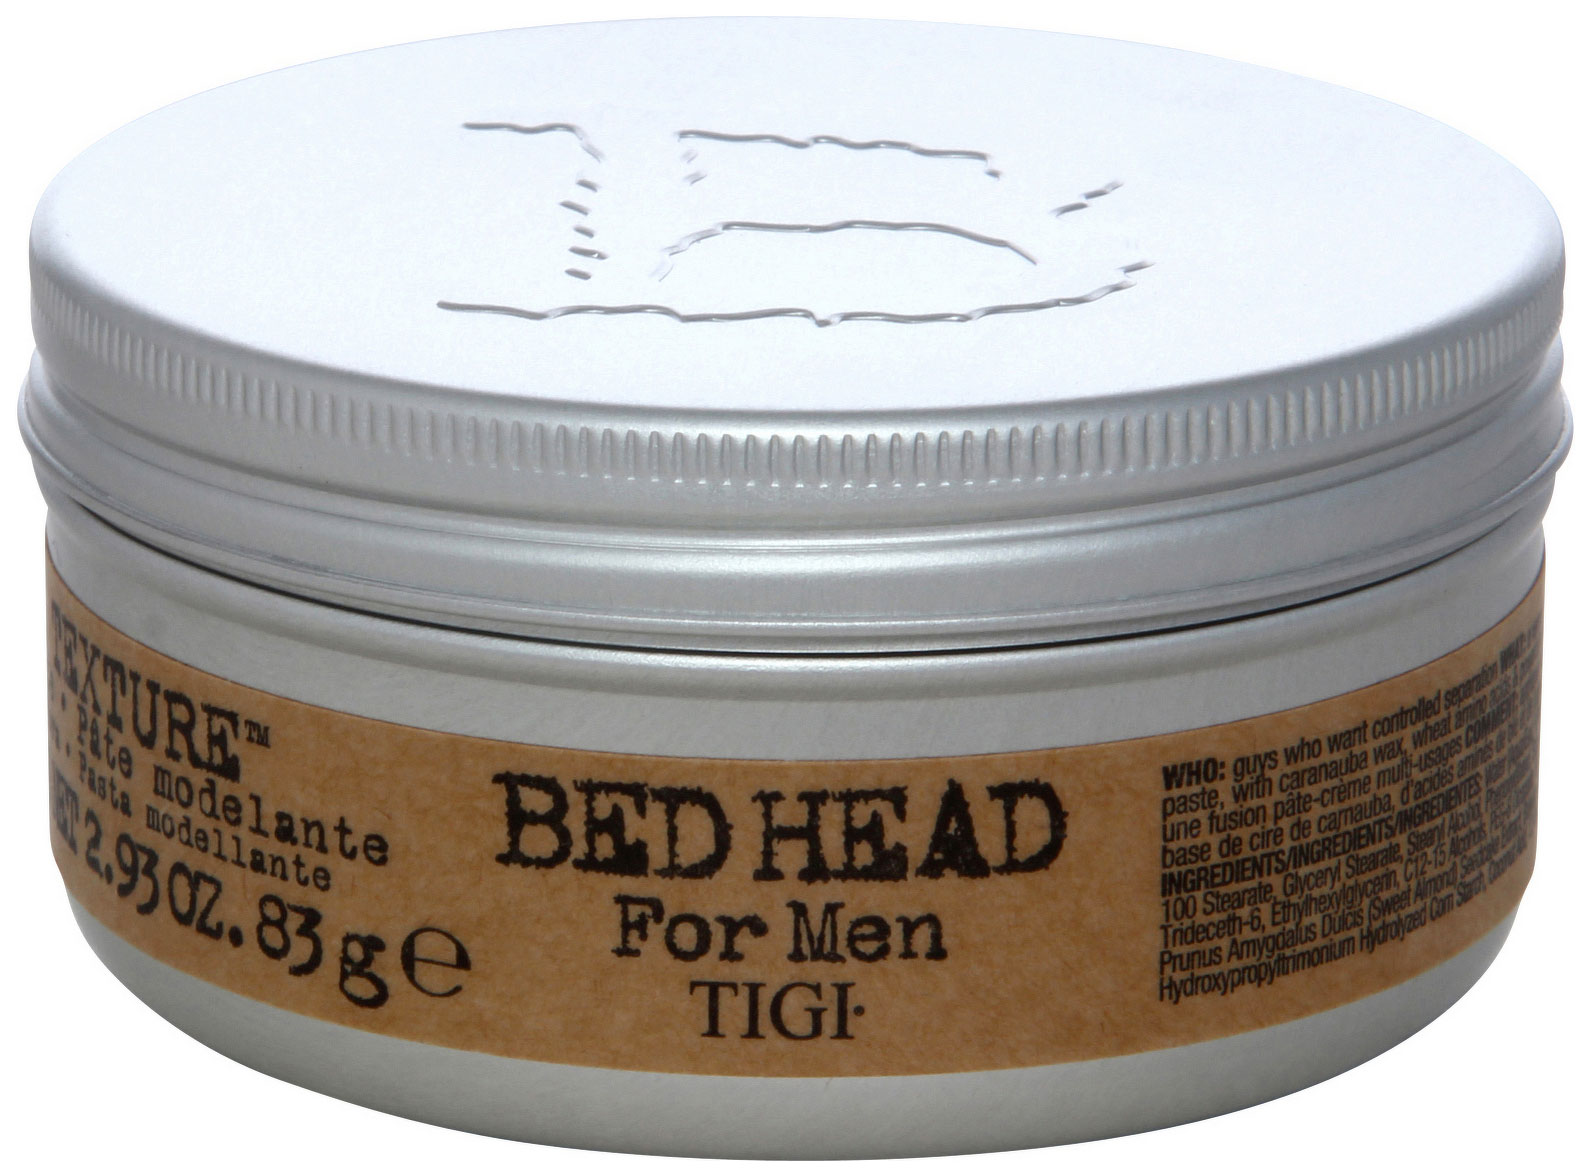 Средство для укладки волос Tigi Bed Head for Men Pure Texture Molding Paste 83 г средство для укладки волос american crew defining paste 85 г